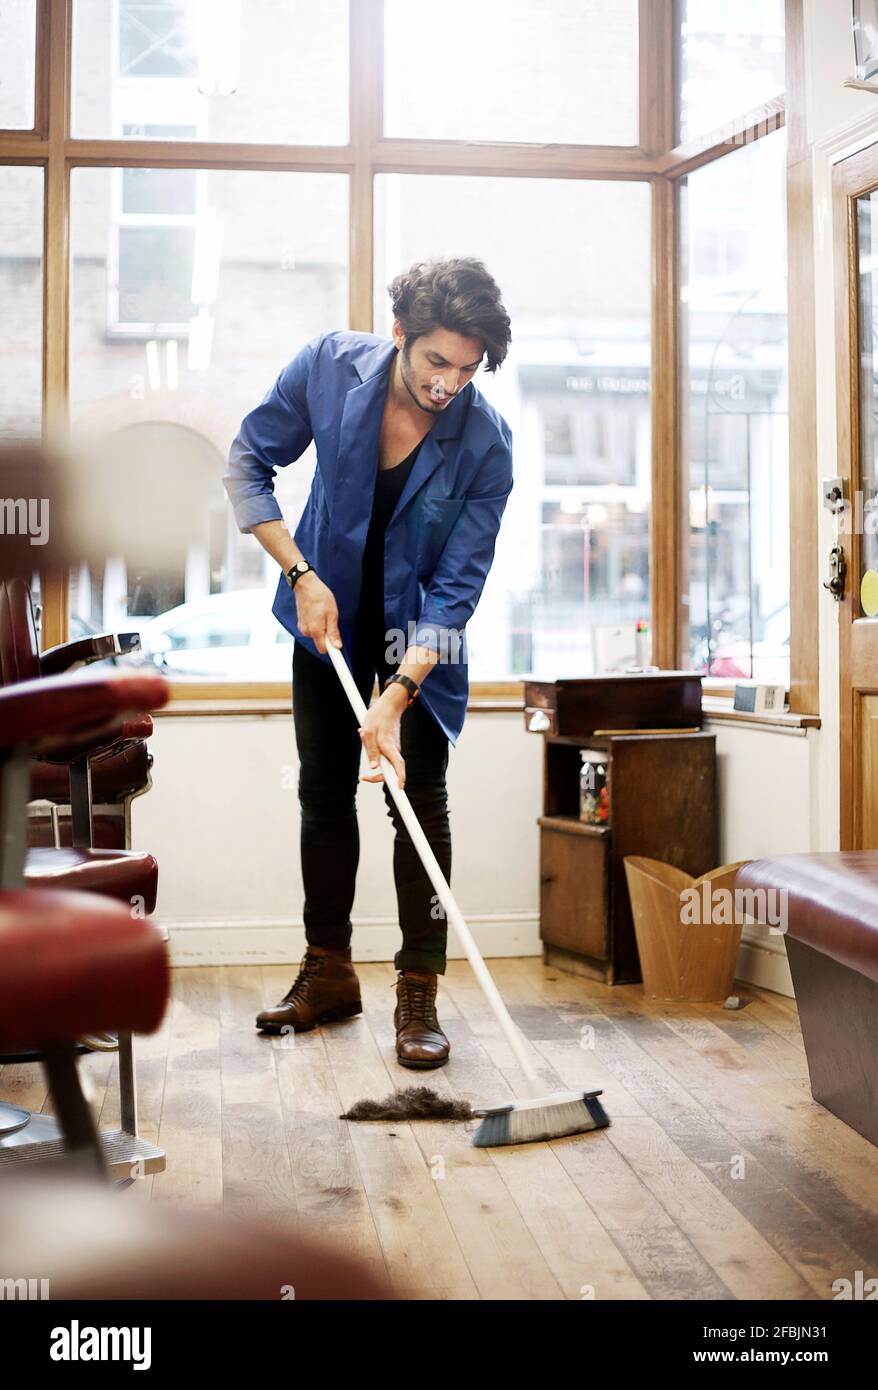 Barber sweeping floor in barber shop Stock Photo